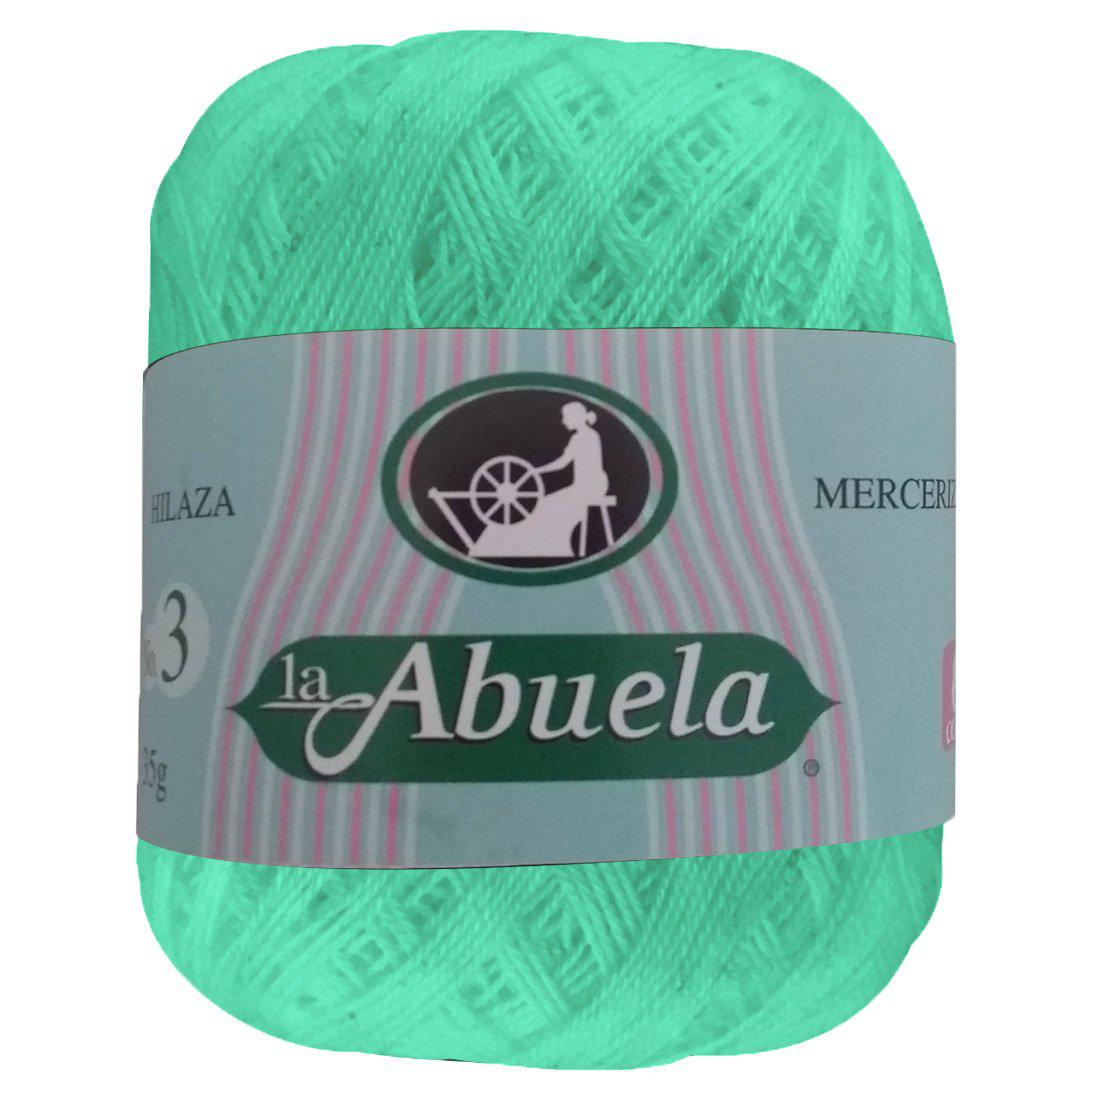 Hilaza La Abuela No.3, marca Omega, CAJA con 8 madejas de 35g con 300m